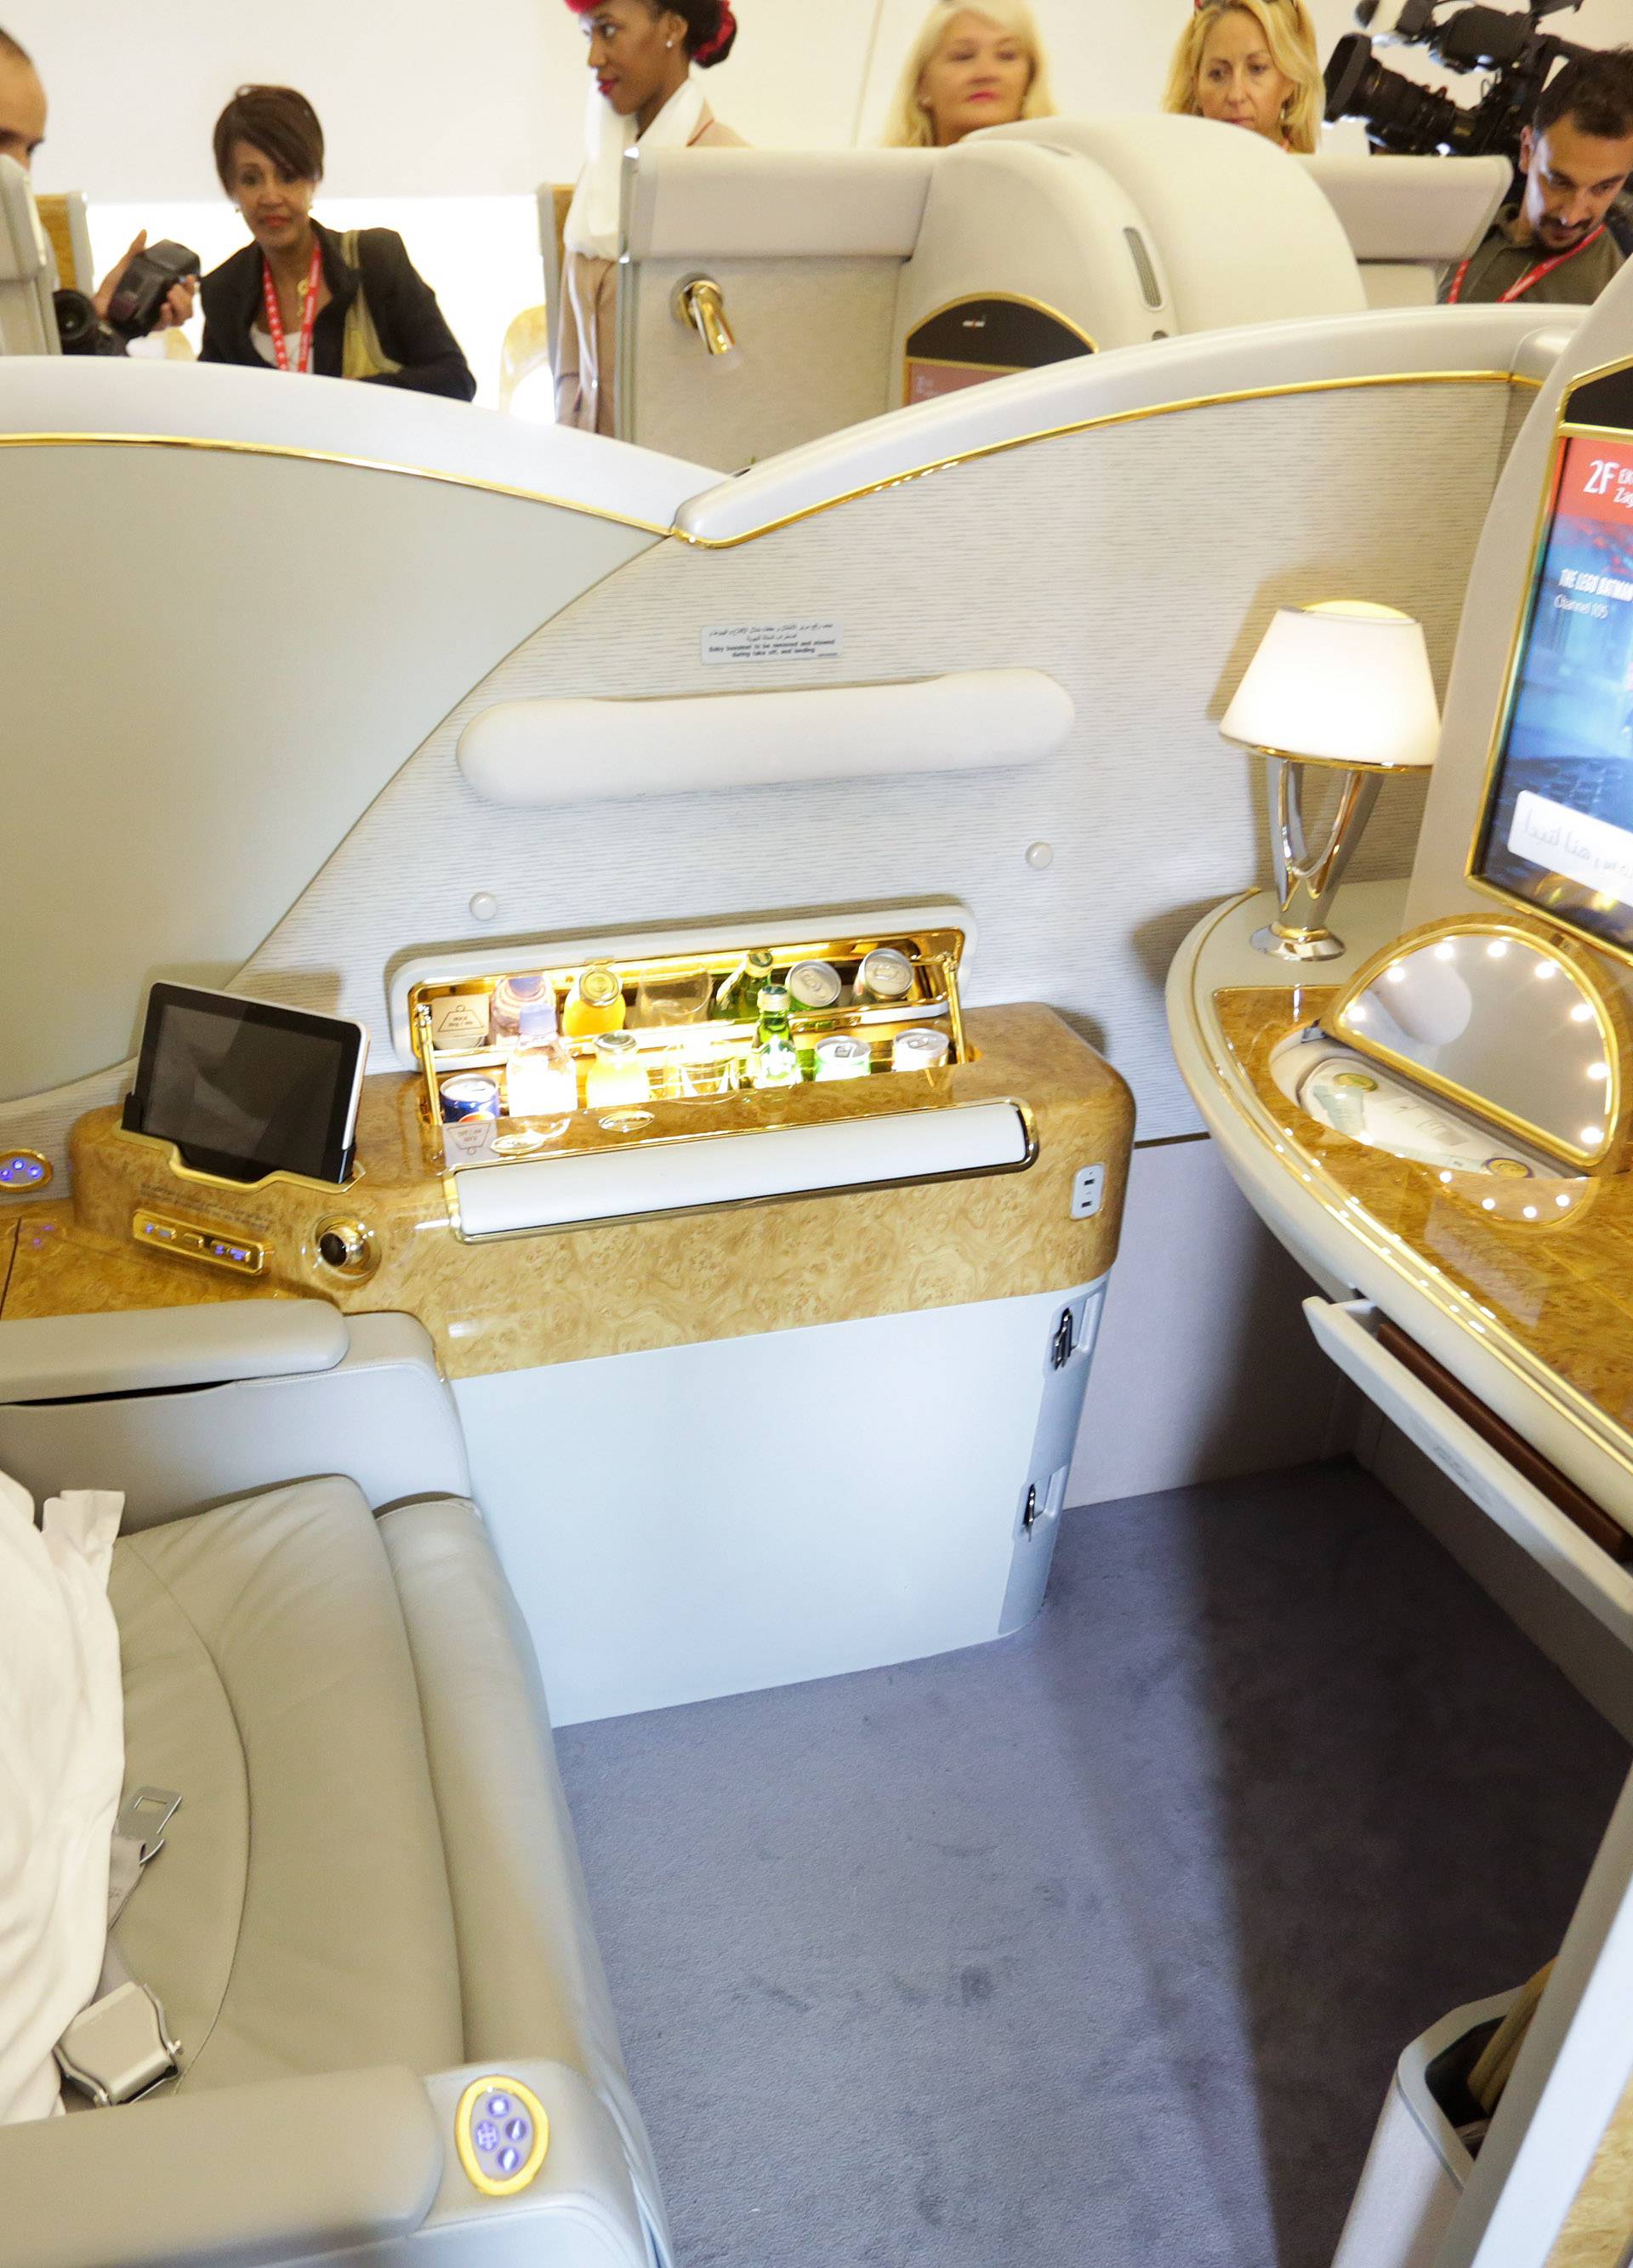 Prvim izravnim letom avion Emiratesa stigao je u Zagreb